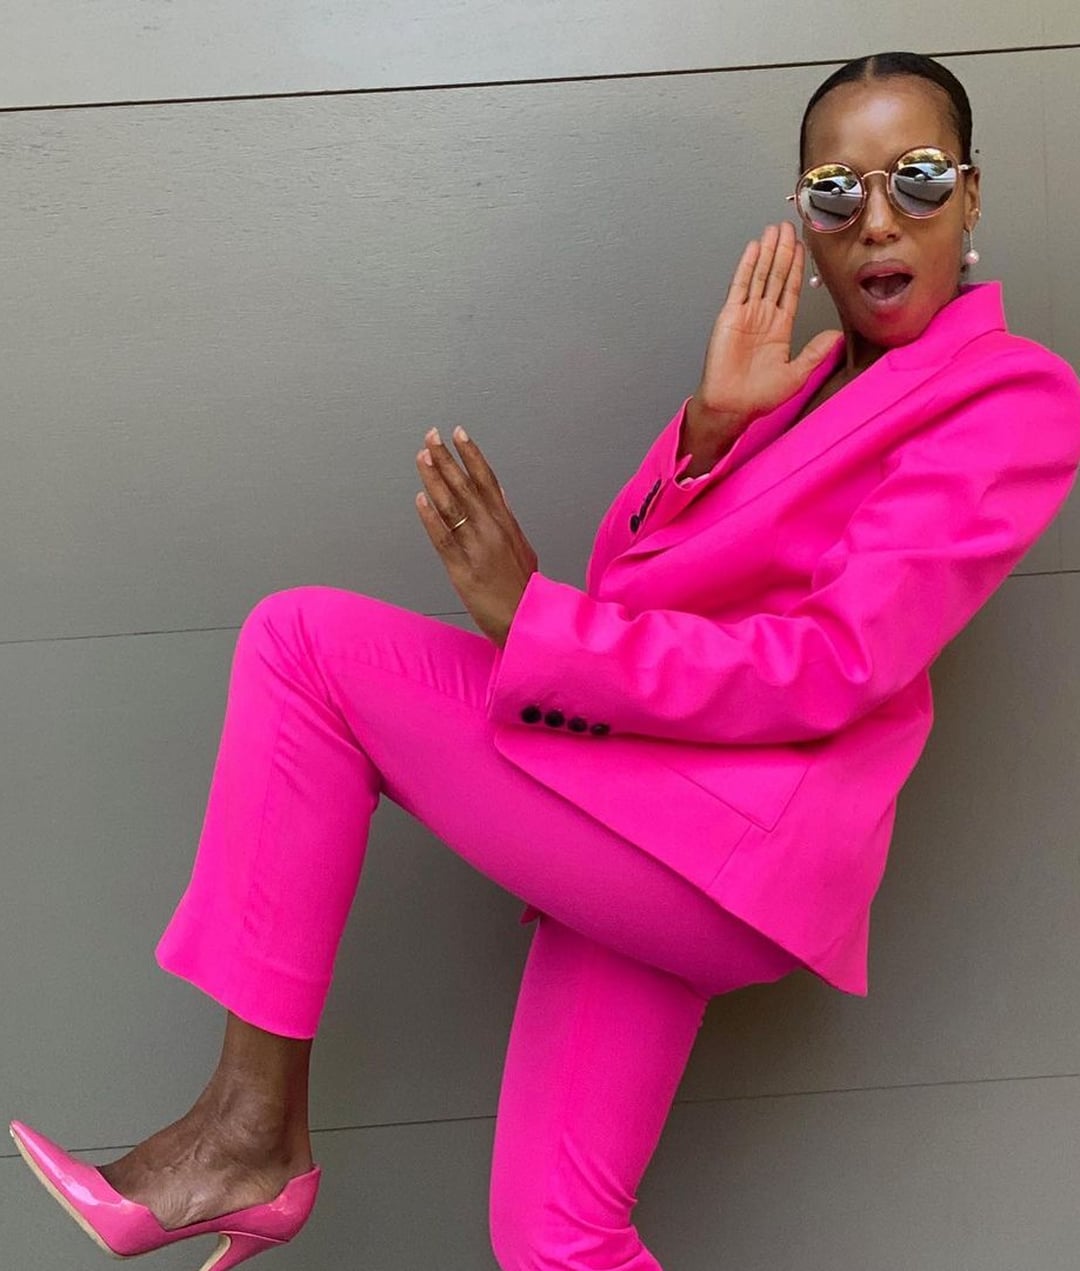 Celebrities in Argent x Supermajority Pink Suit on Instagram